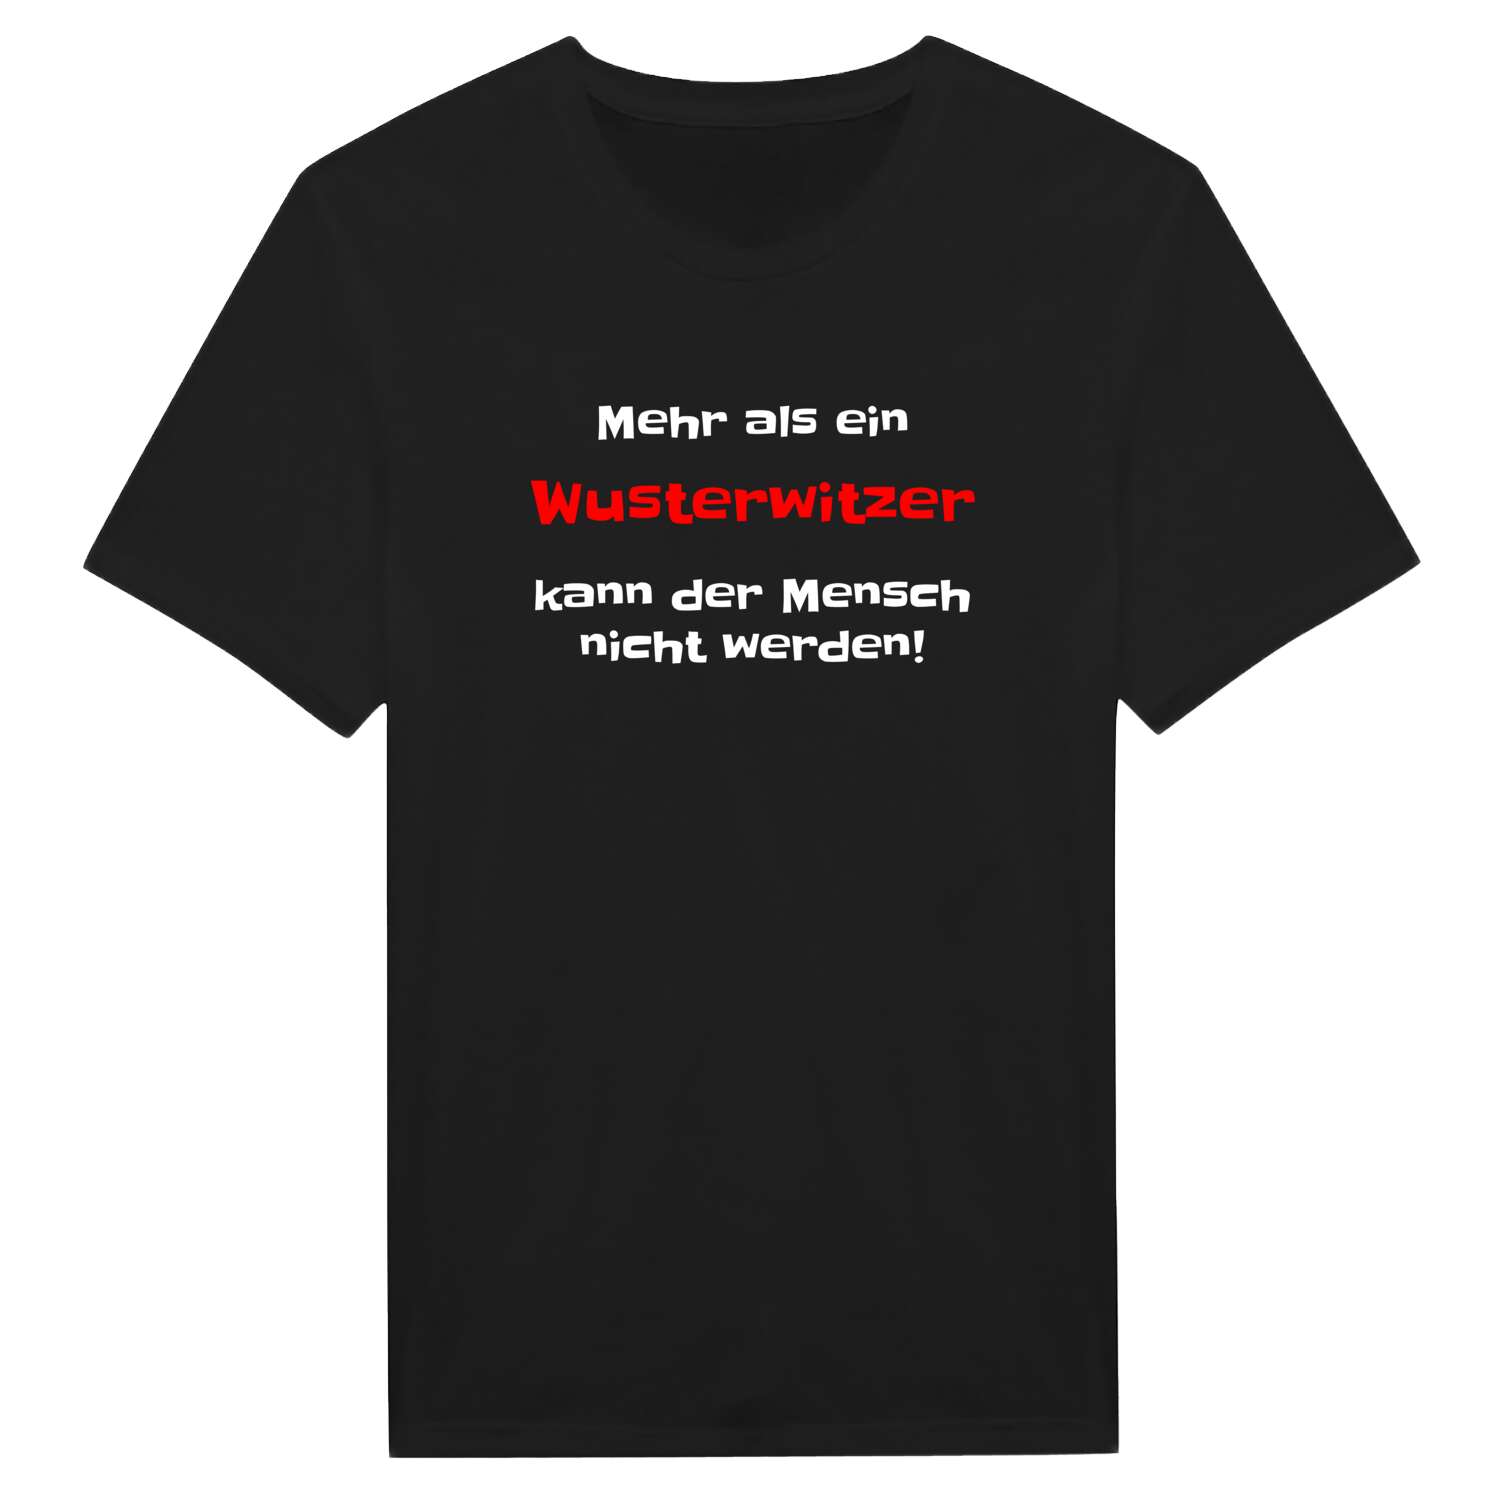 Wusterwitz T-Shirt »Mehr als ein«